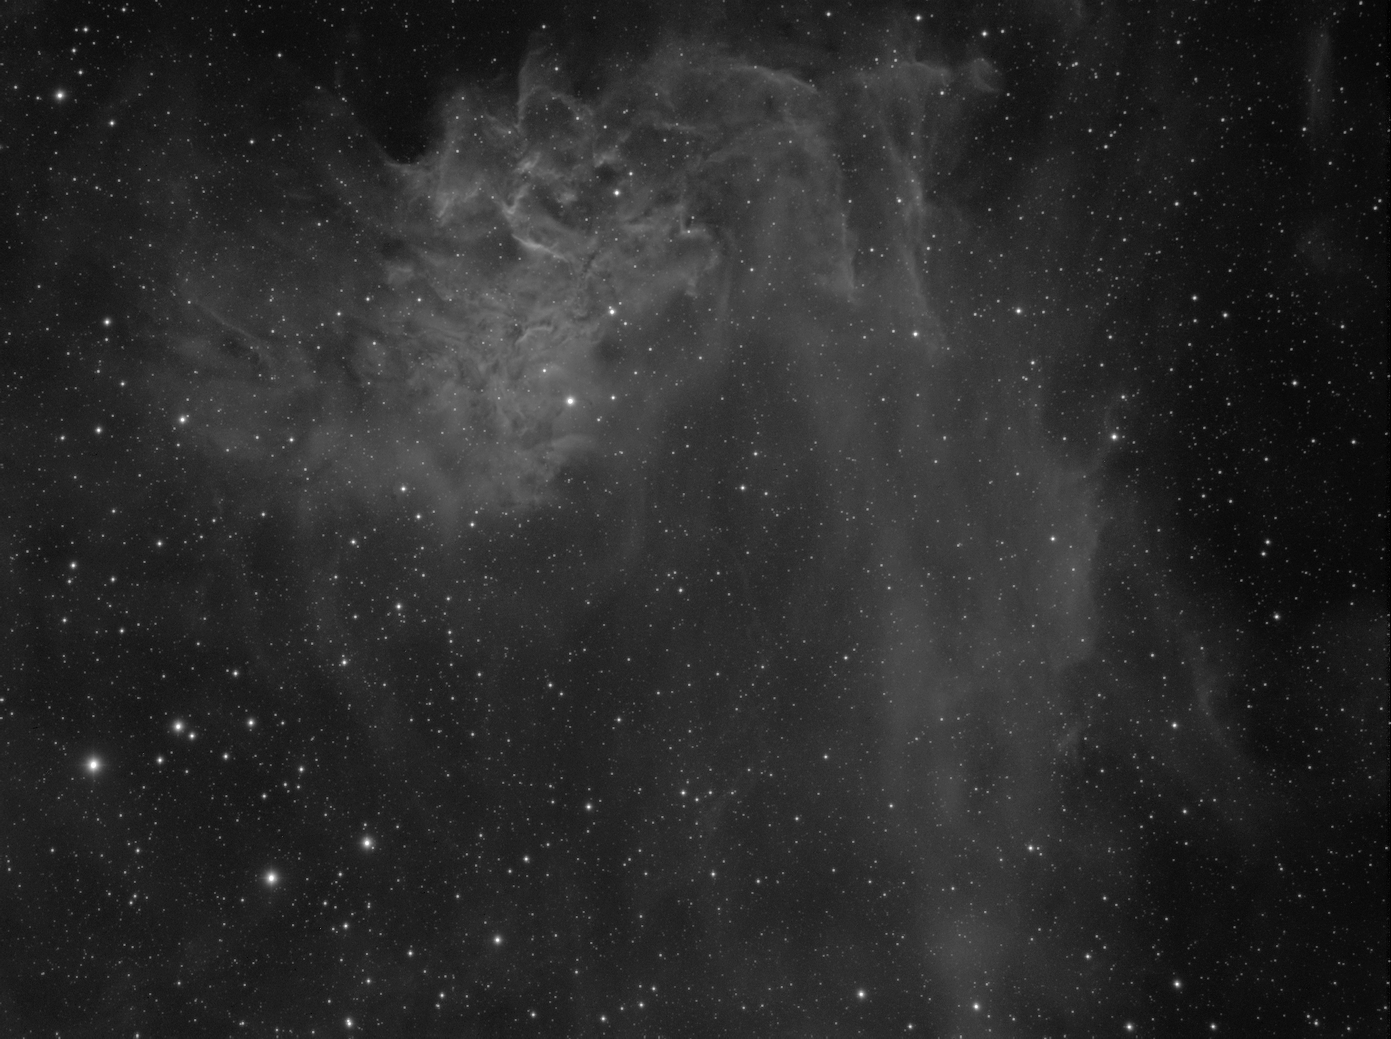 IC 405_Flaming star nebula_Ha_4.jpg